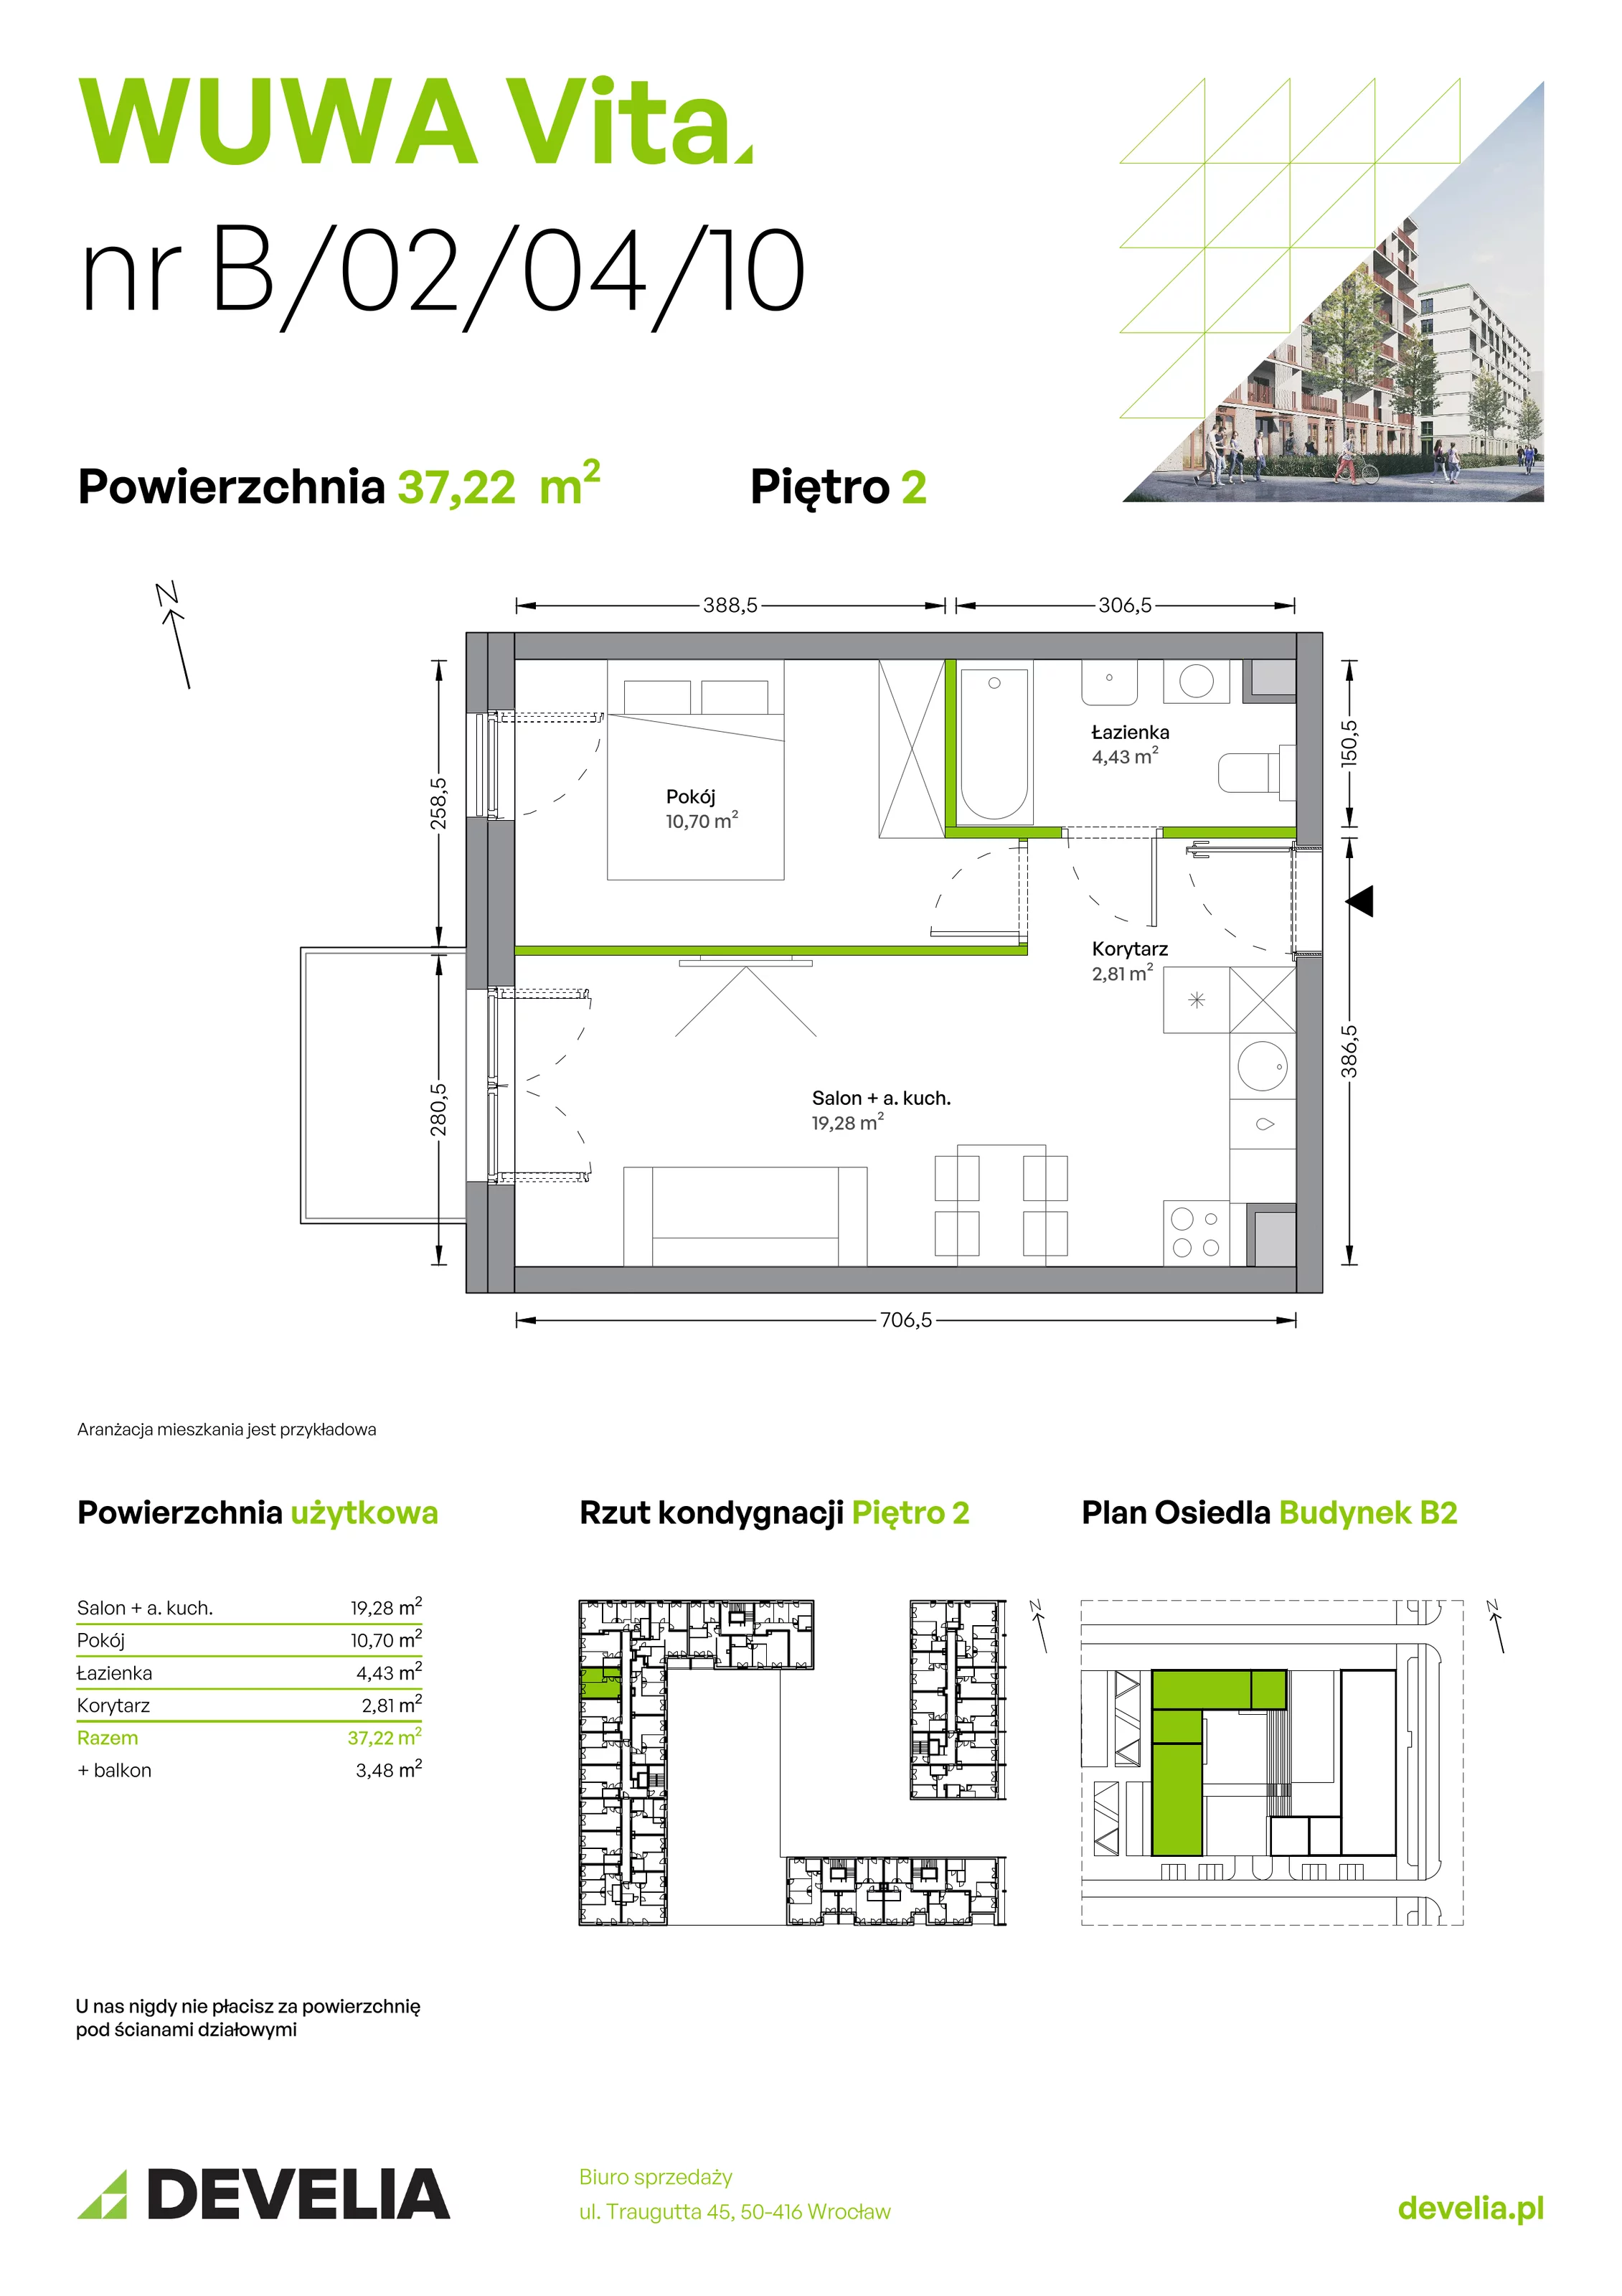 Mieszkanie 37,22 m², piętro 2, oferta nr B.02.04.10, WUWA Vita, Wrocław, Żerniki, Fabryczna, ul. Tadeusza Brzozy